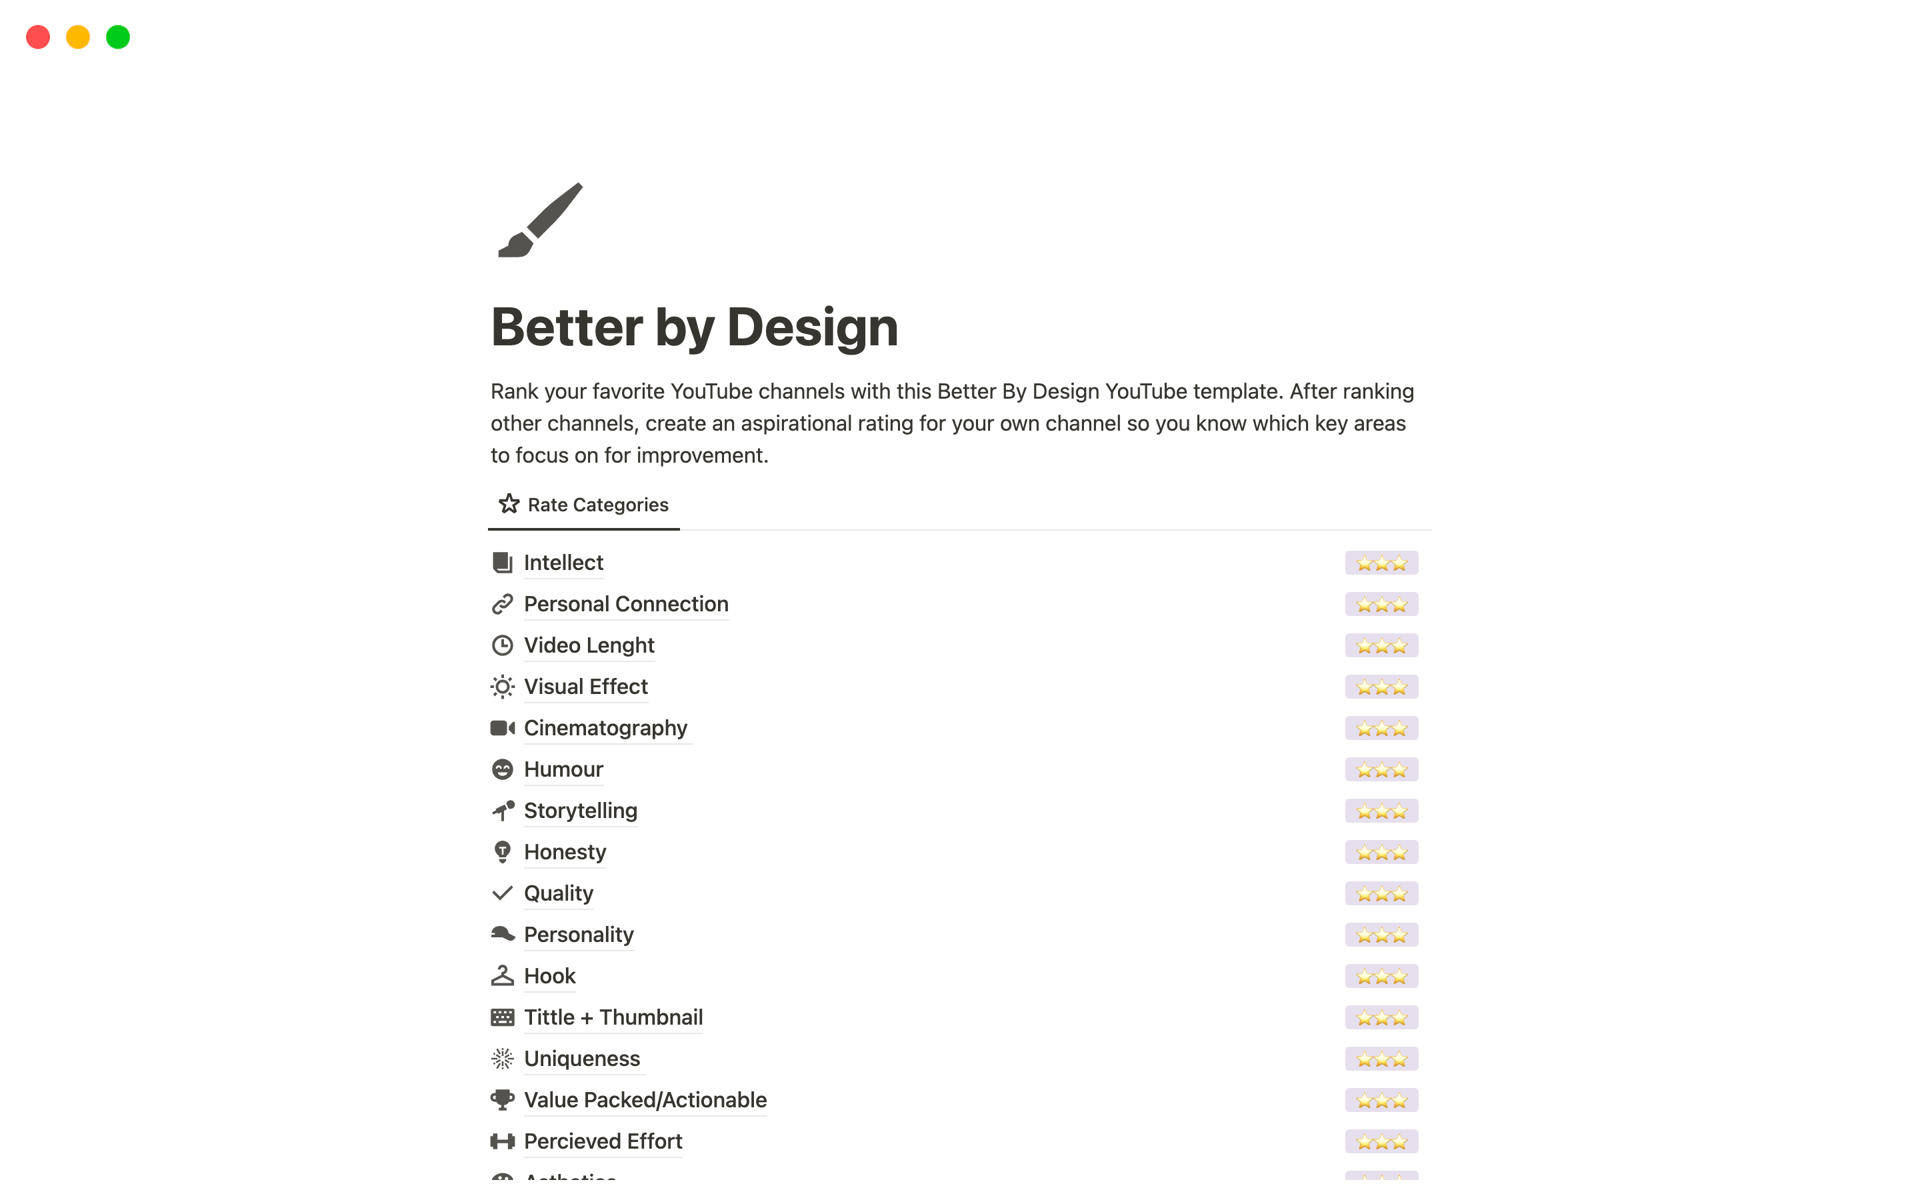 Aperçu du modèle de Better by Design